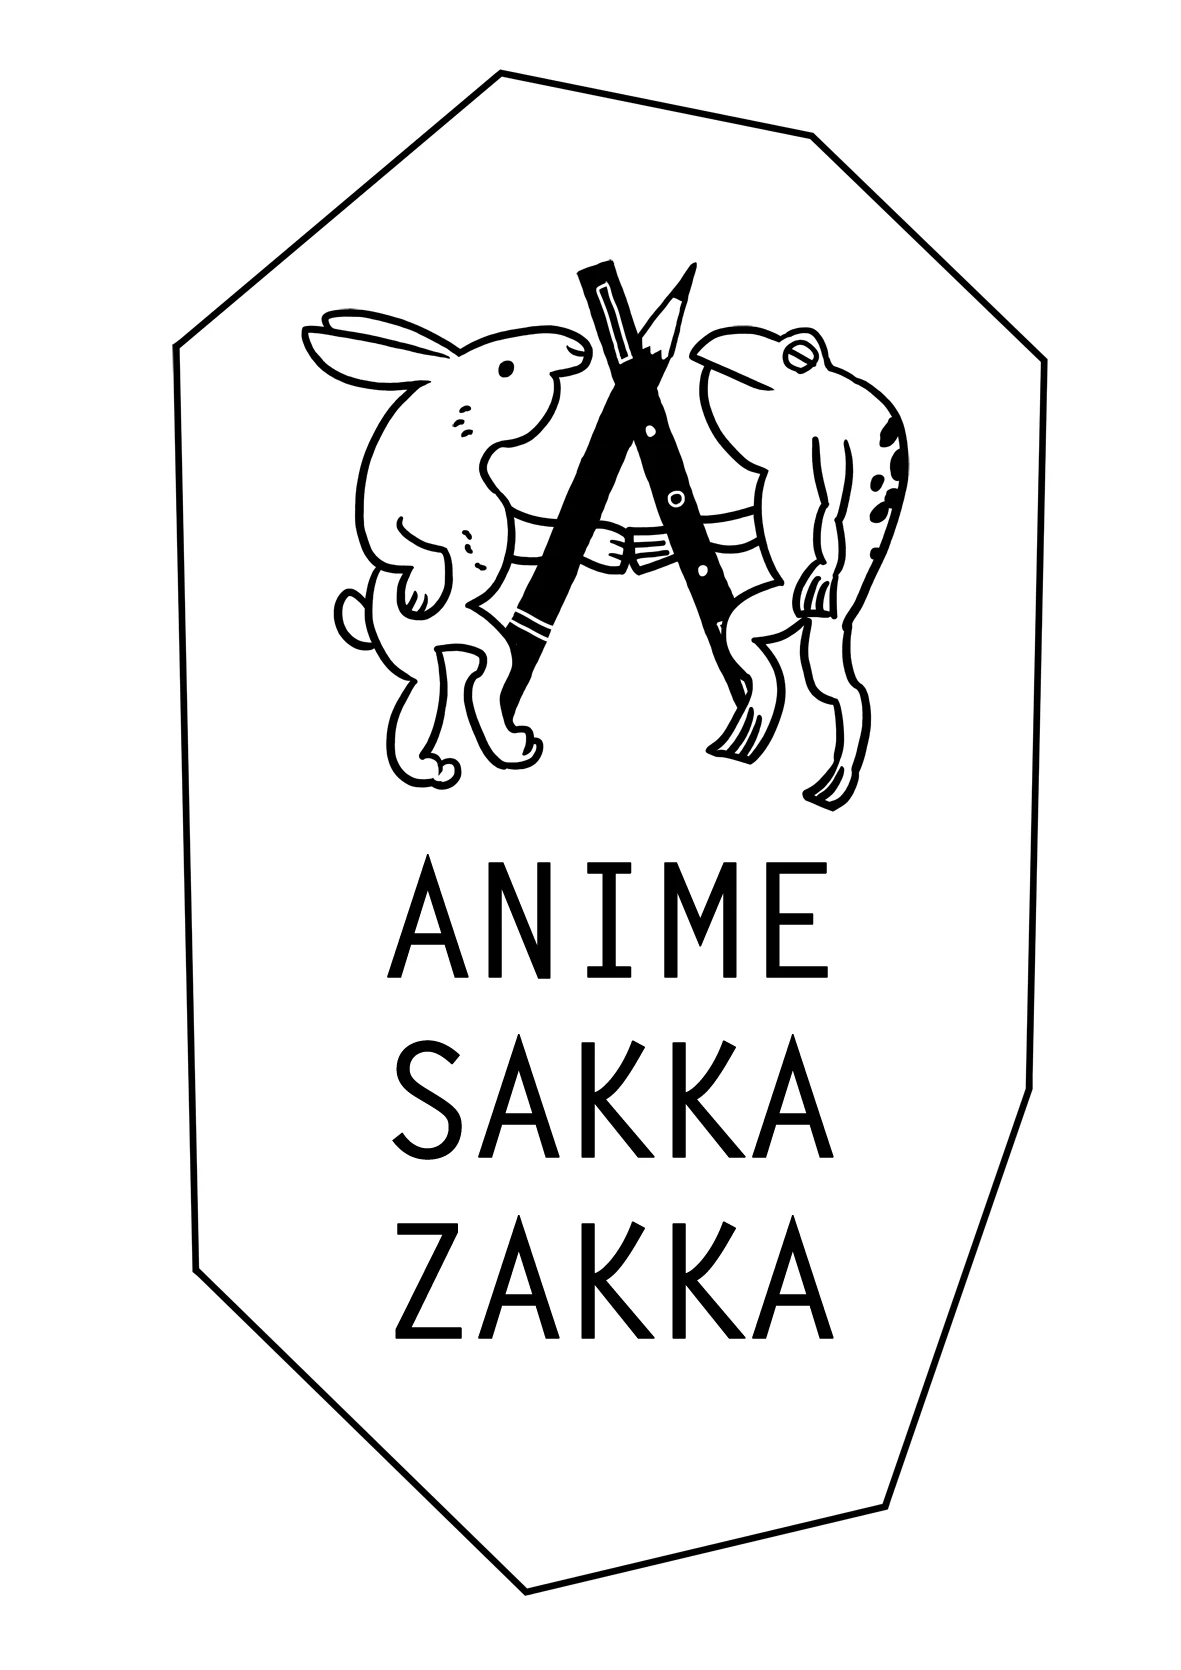 アニメーション+α作家たちによる合同企画展「ANIME SAKKA ZAKKA」